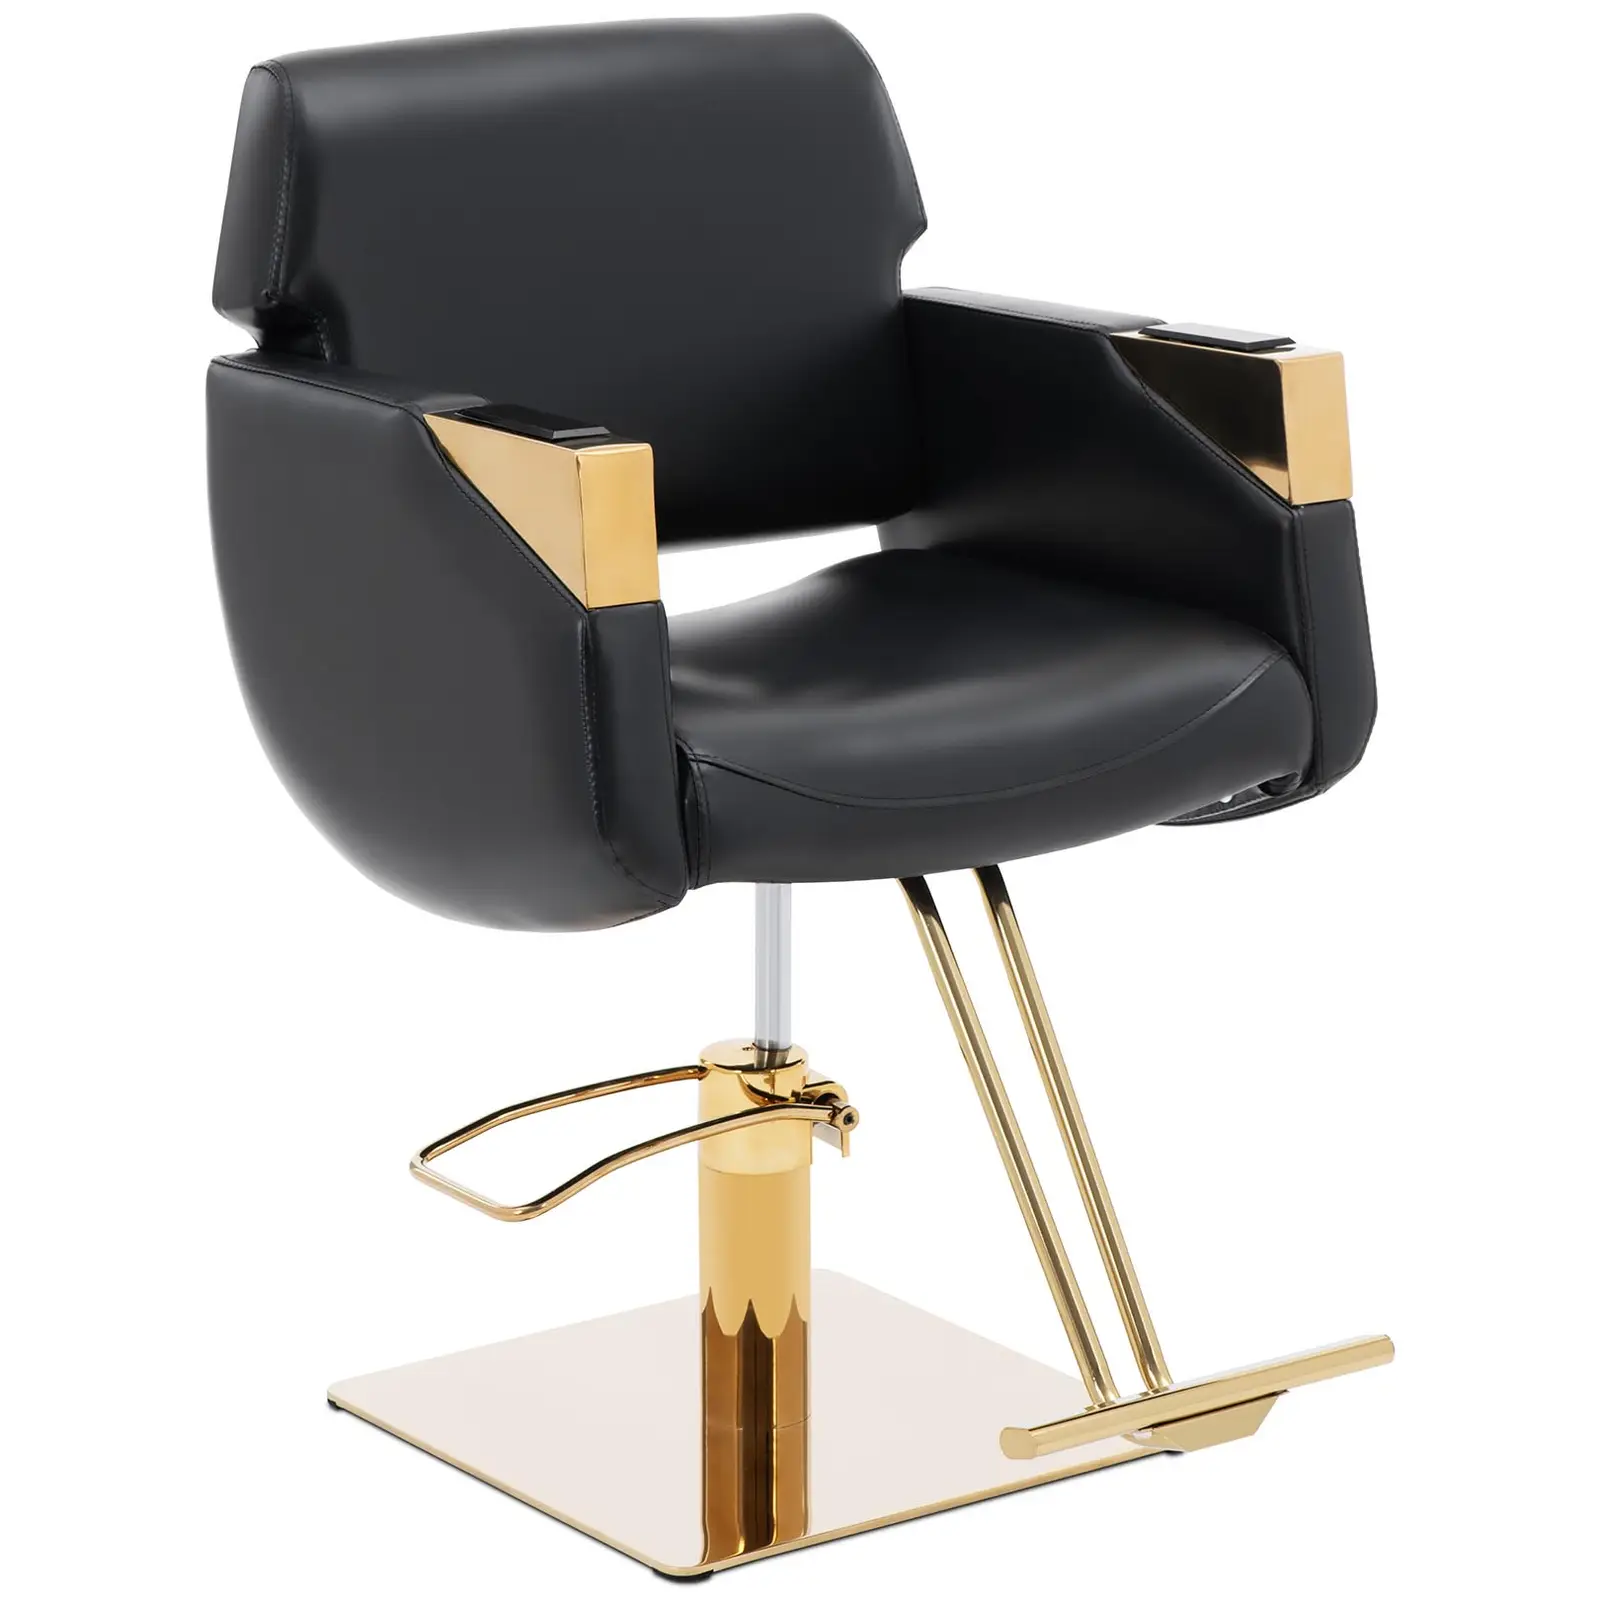 Cadeira de cabeleireiro com apoio para os pés - 880 - 1030 mm - 200 kg - preto / dourado